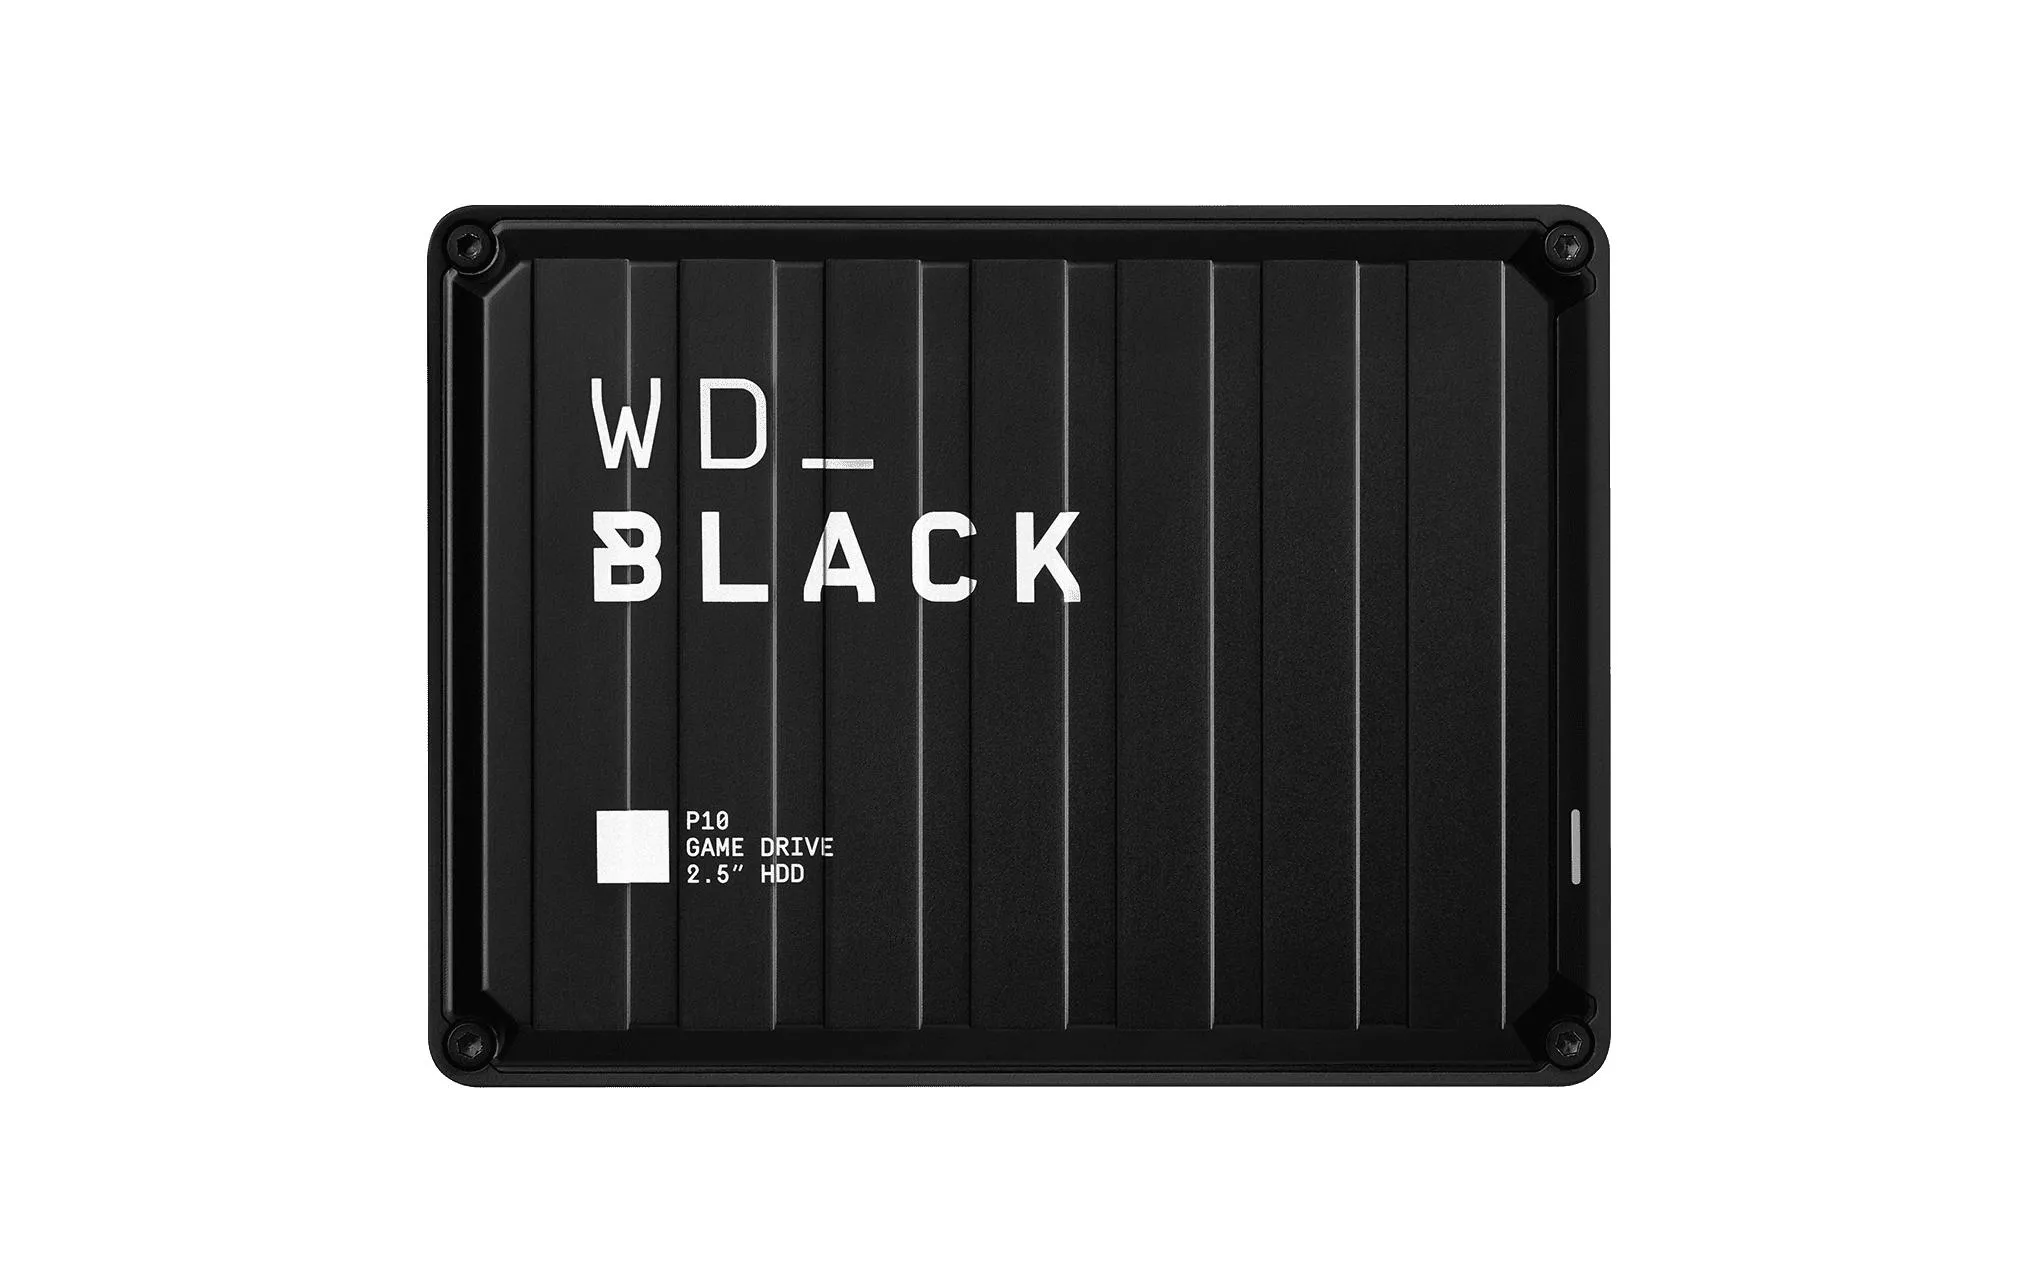 Disco rigido esterno WD Black WD_BLACK P10 Game Drive 4 TB